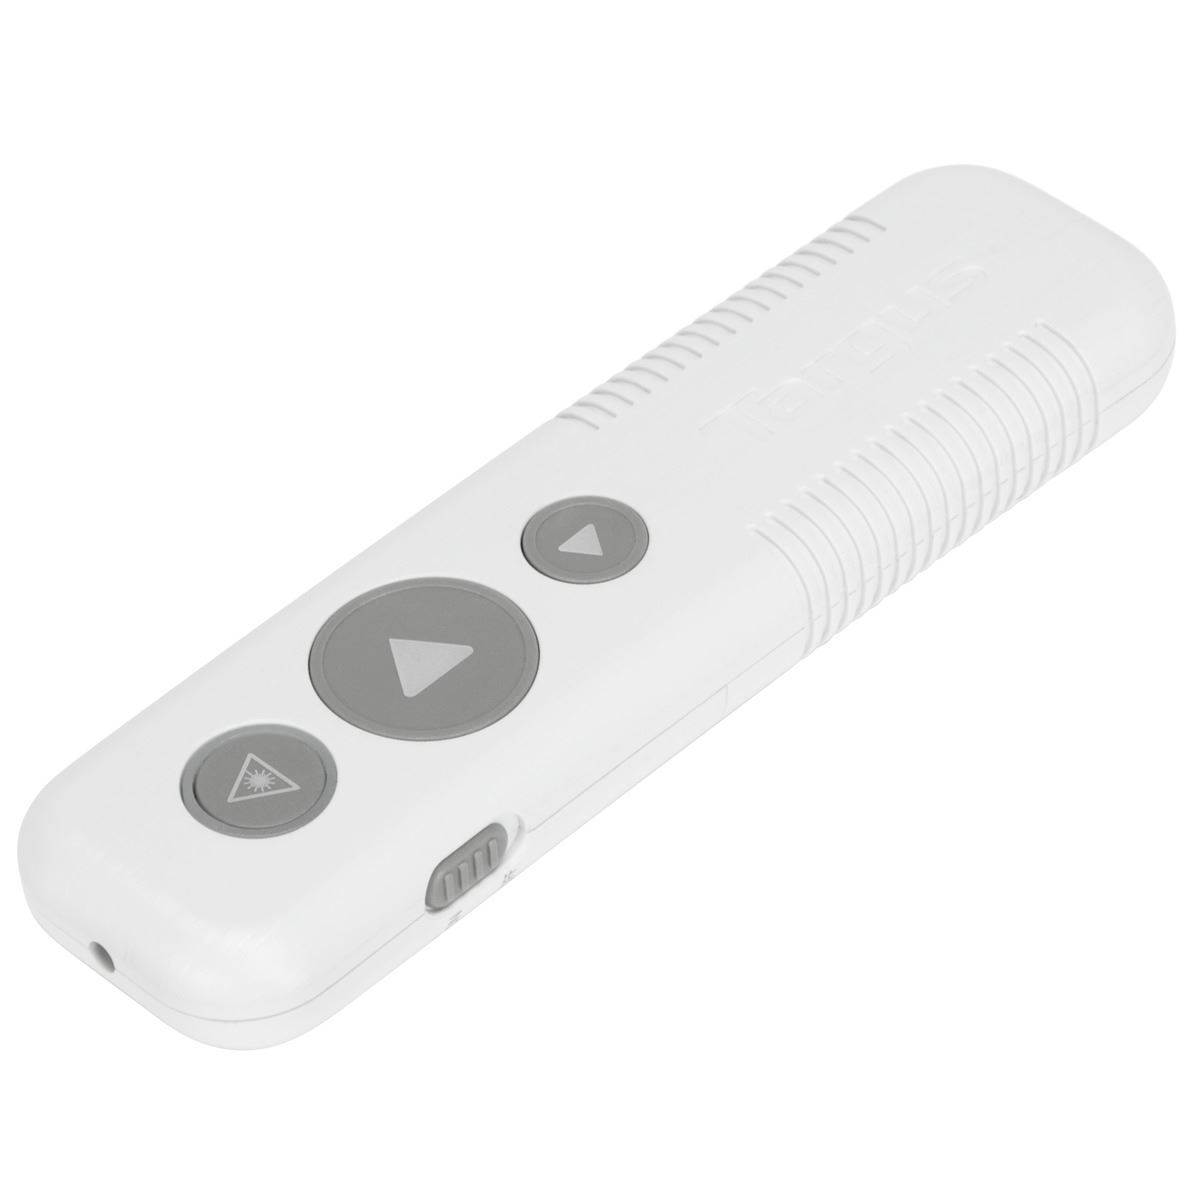 0051365_wireless-usb-presenter-with-laser-pointer-white.jpg